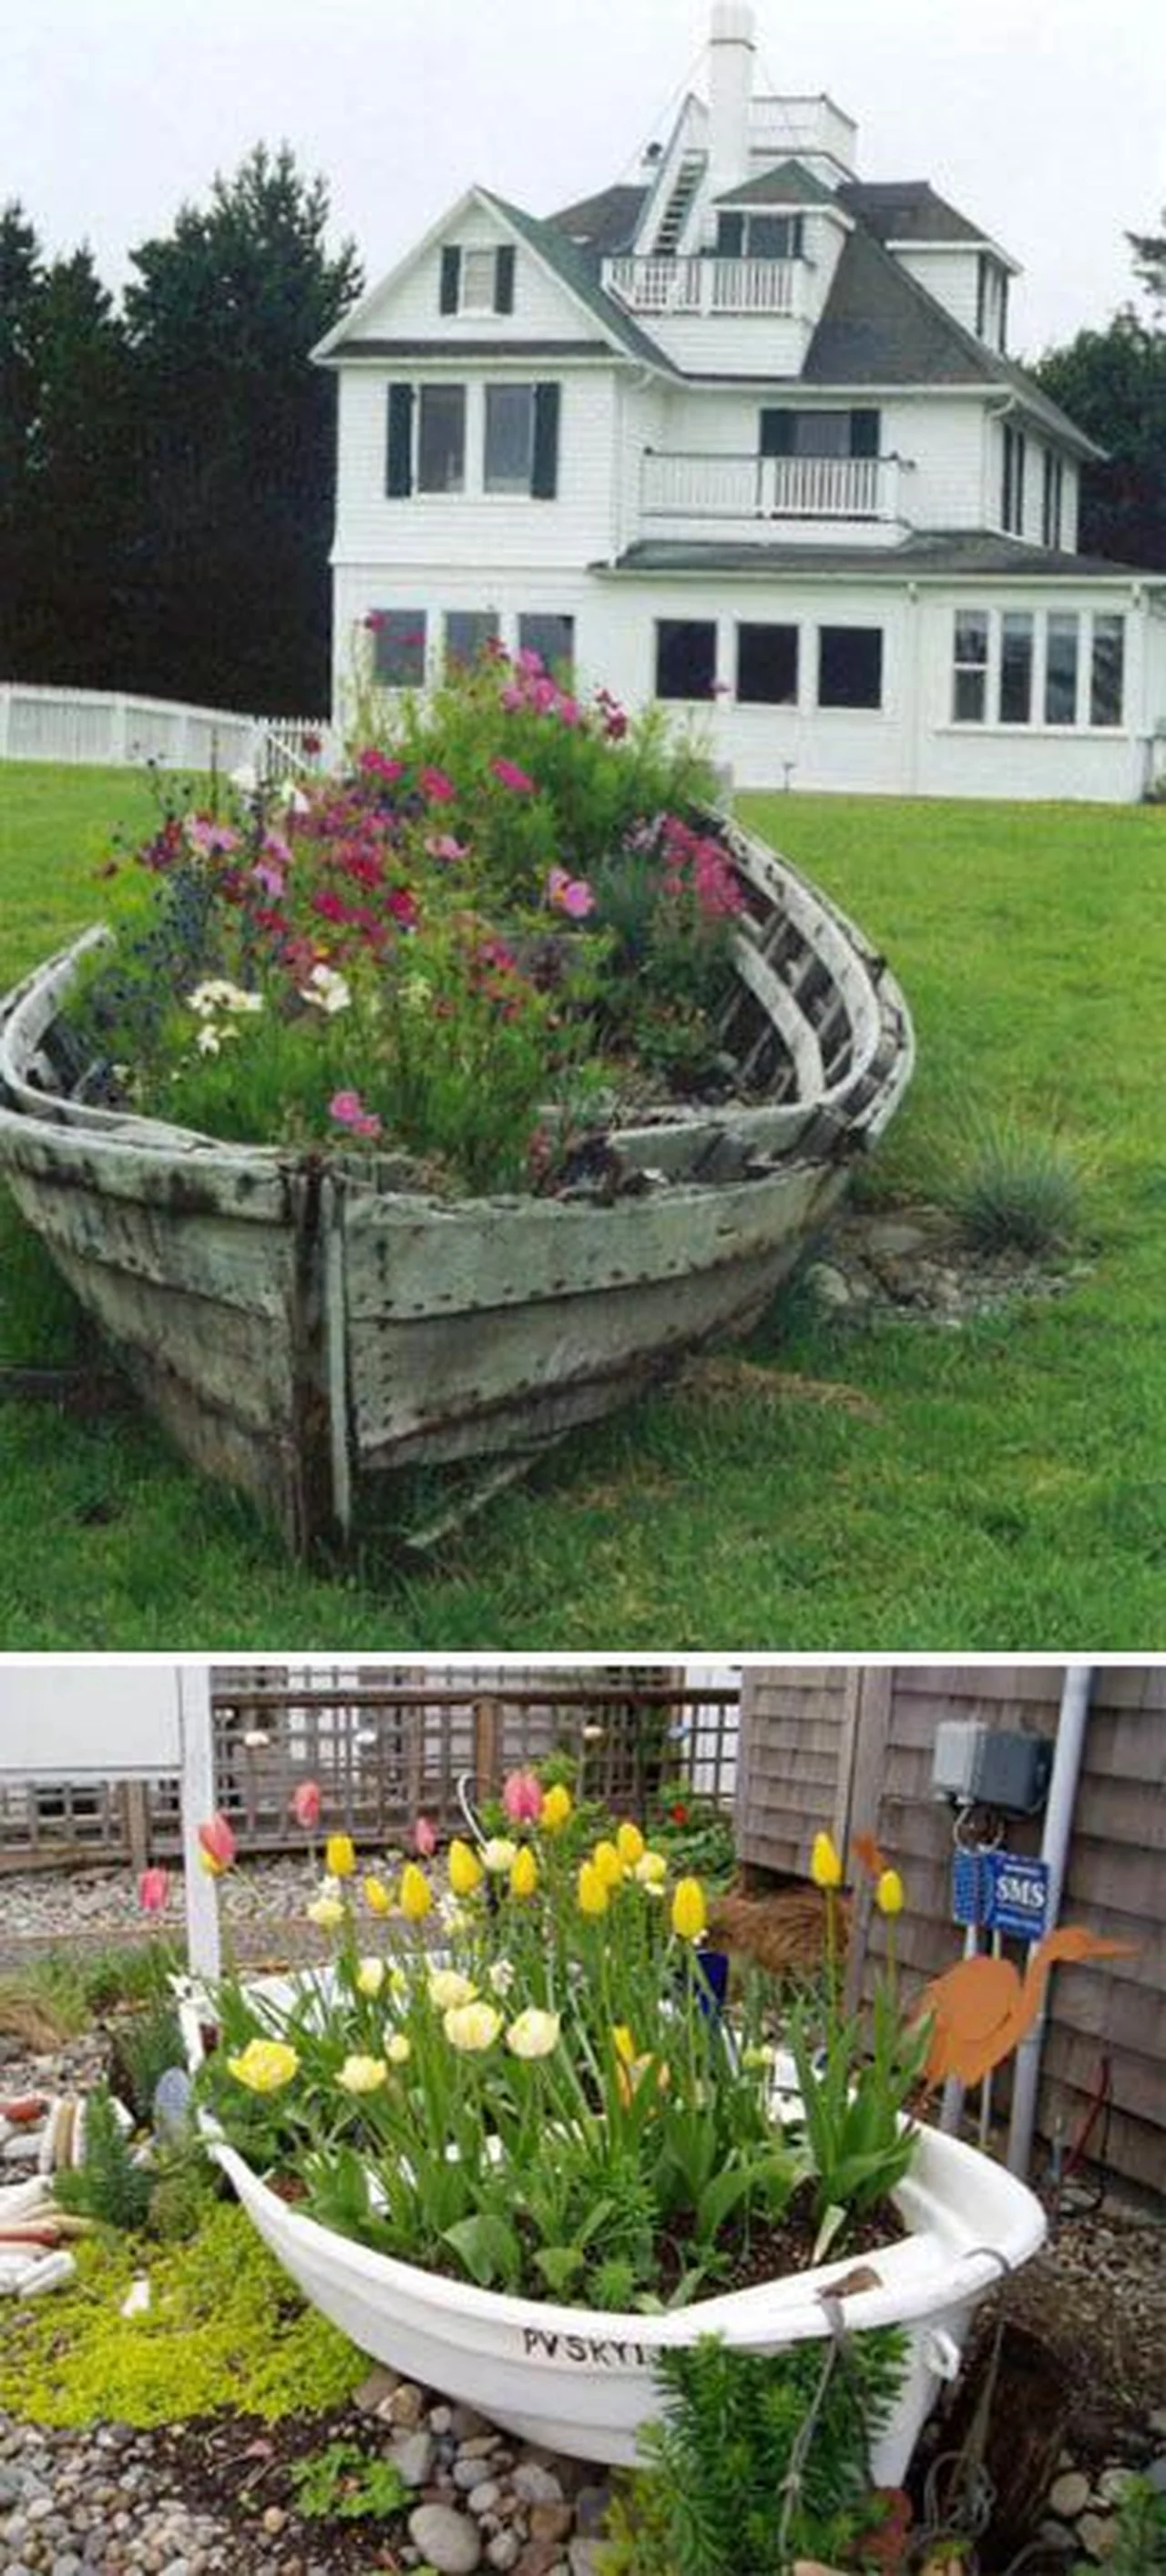 Łódka w ogrodzie